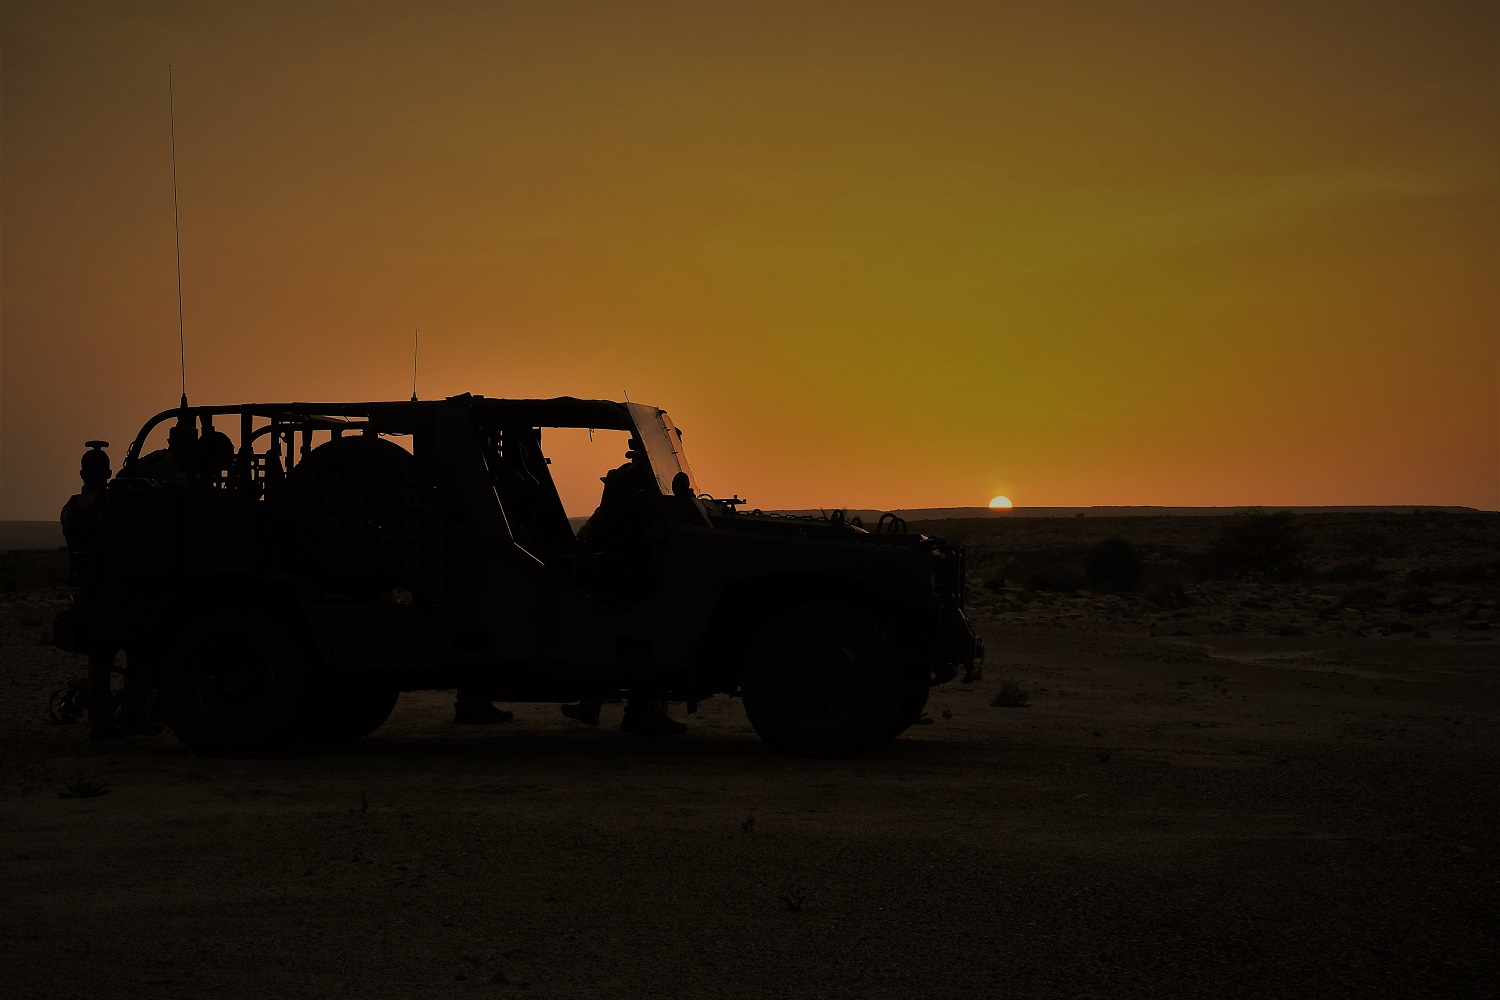 Las Fuerzas de Operaciones Especiales españolas finalizan el “Flintlock 19” en el Sahel